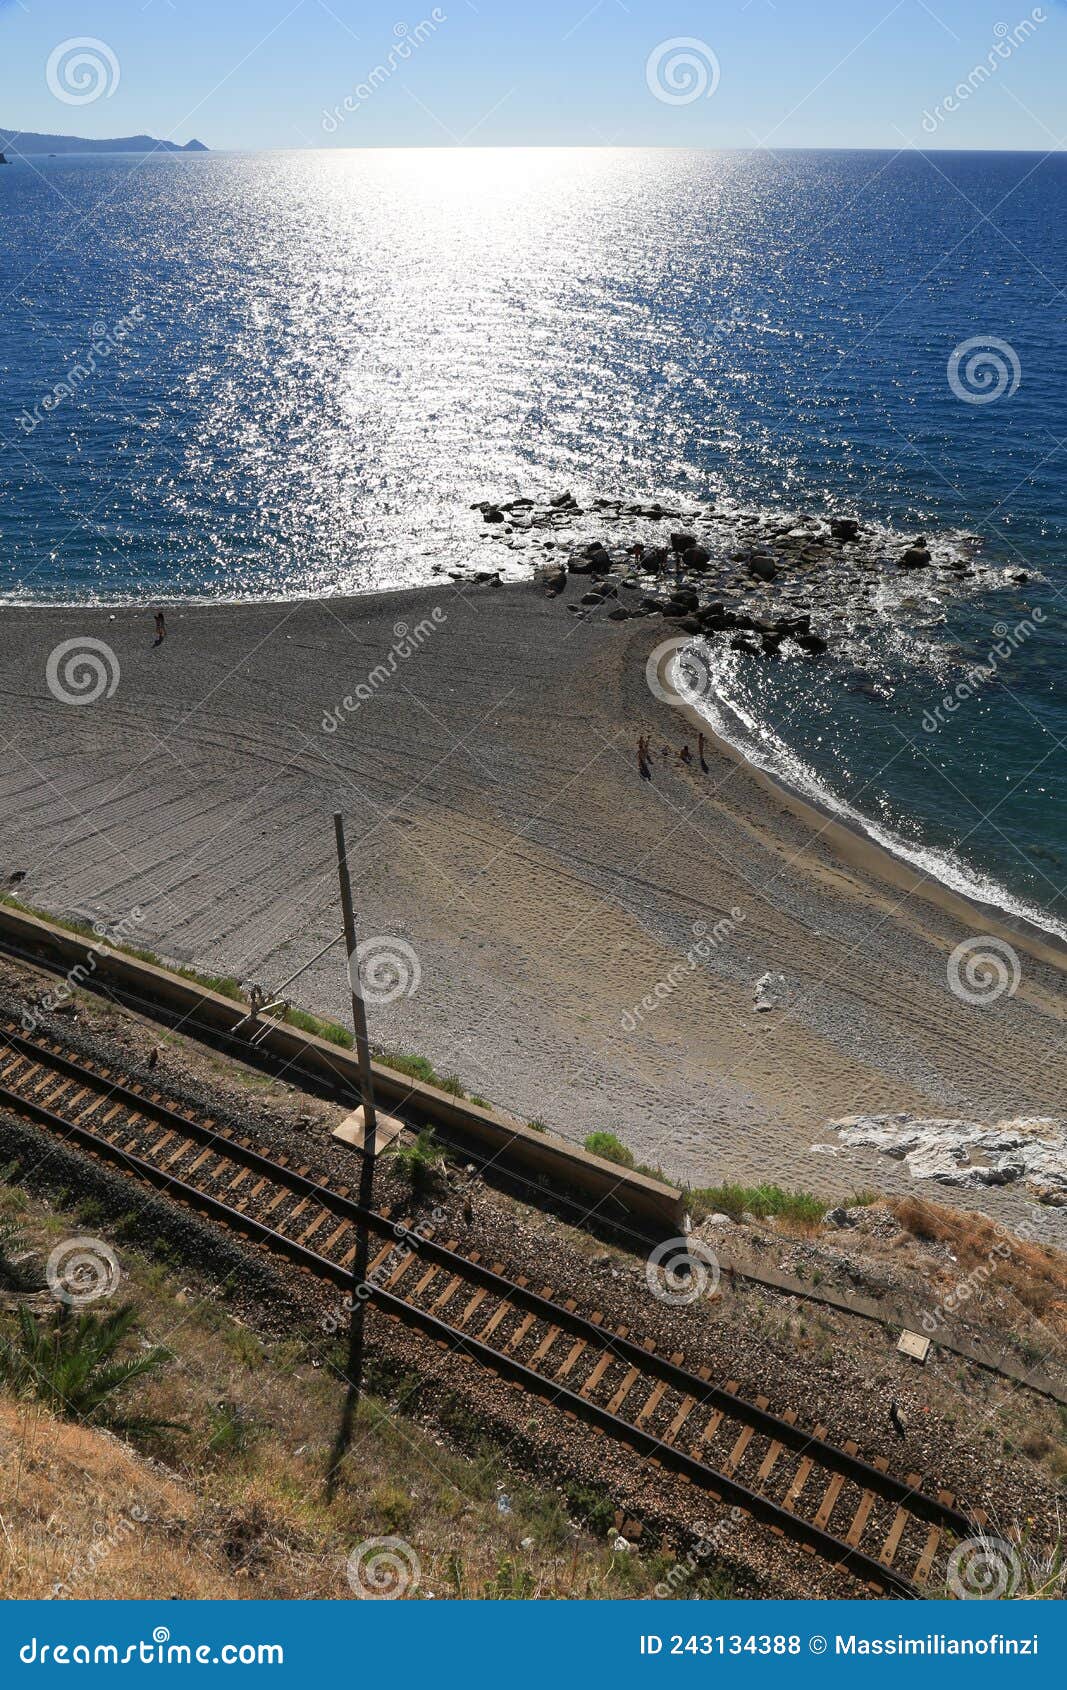 gioiosa marea beach with railway